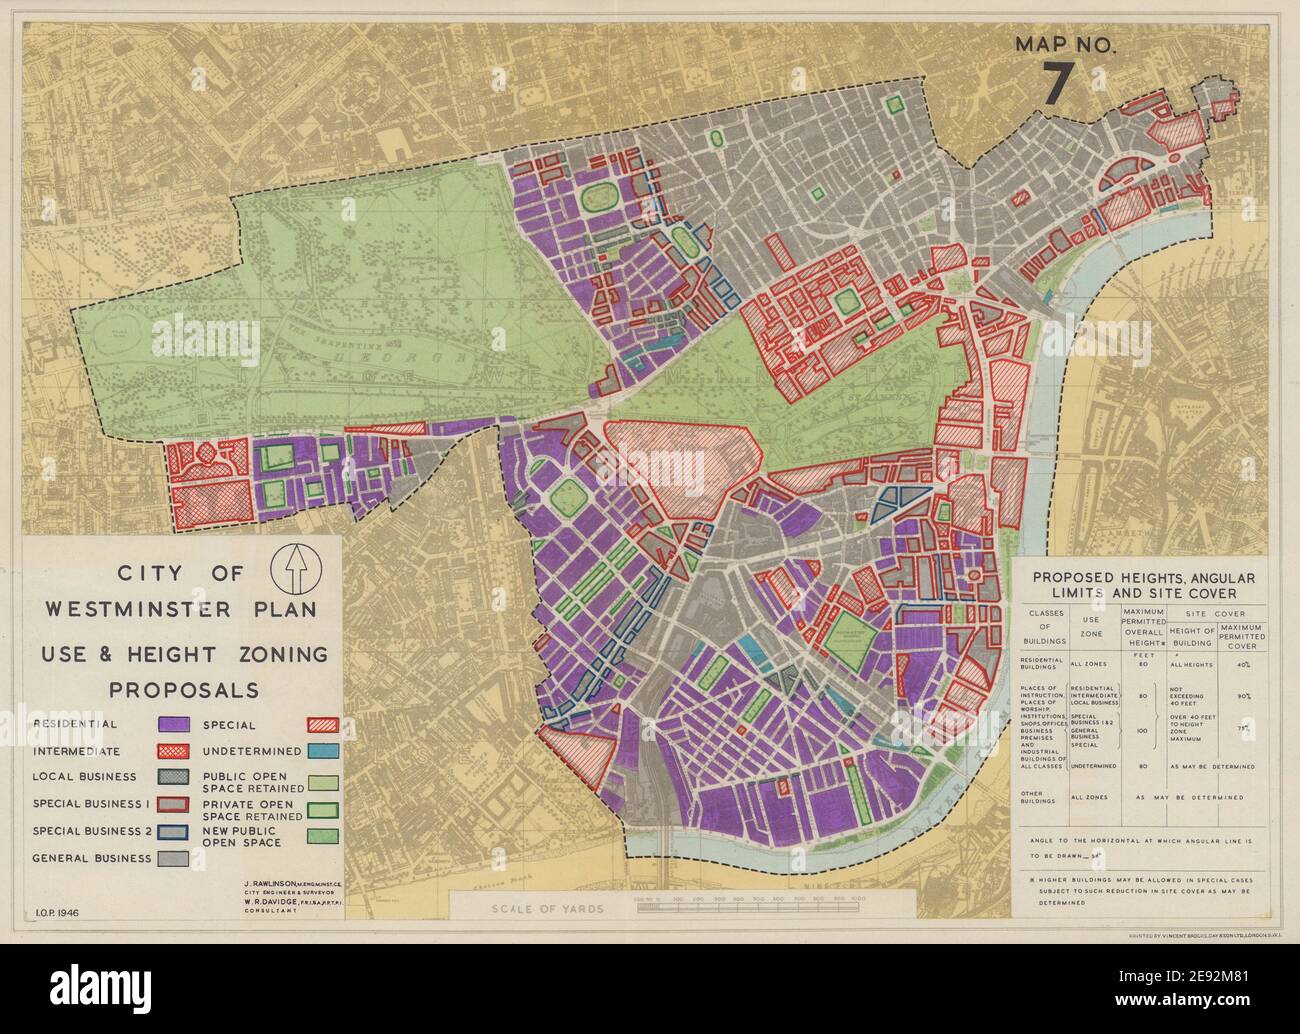 Plan der Stadt Westminster. Verwendung Und Höhe Zoning Vorschläge. RAWLINSON 1946-Karte Stockfoto